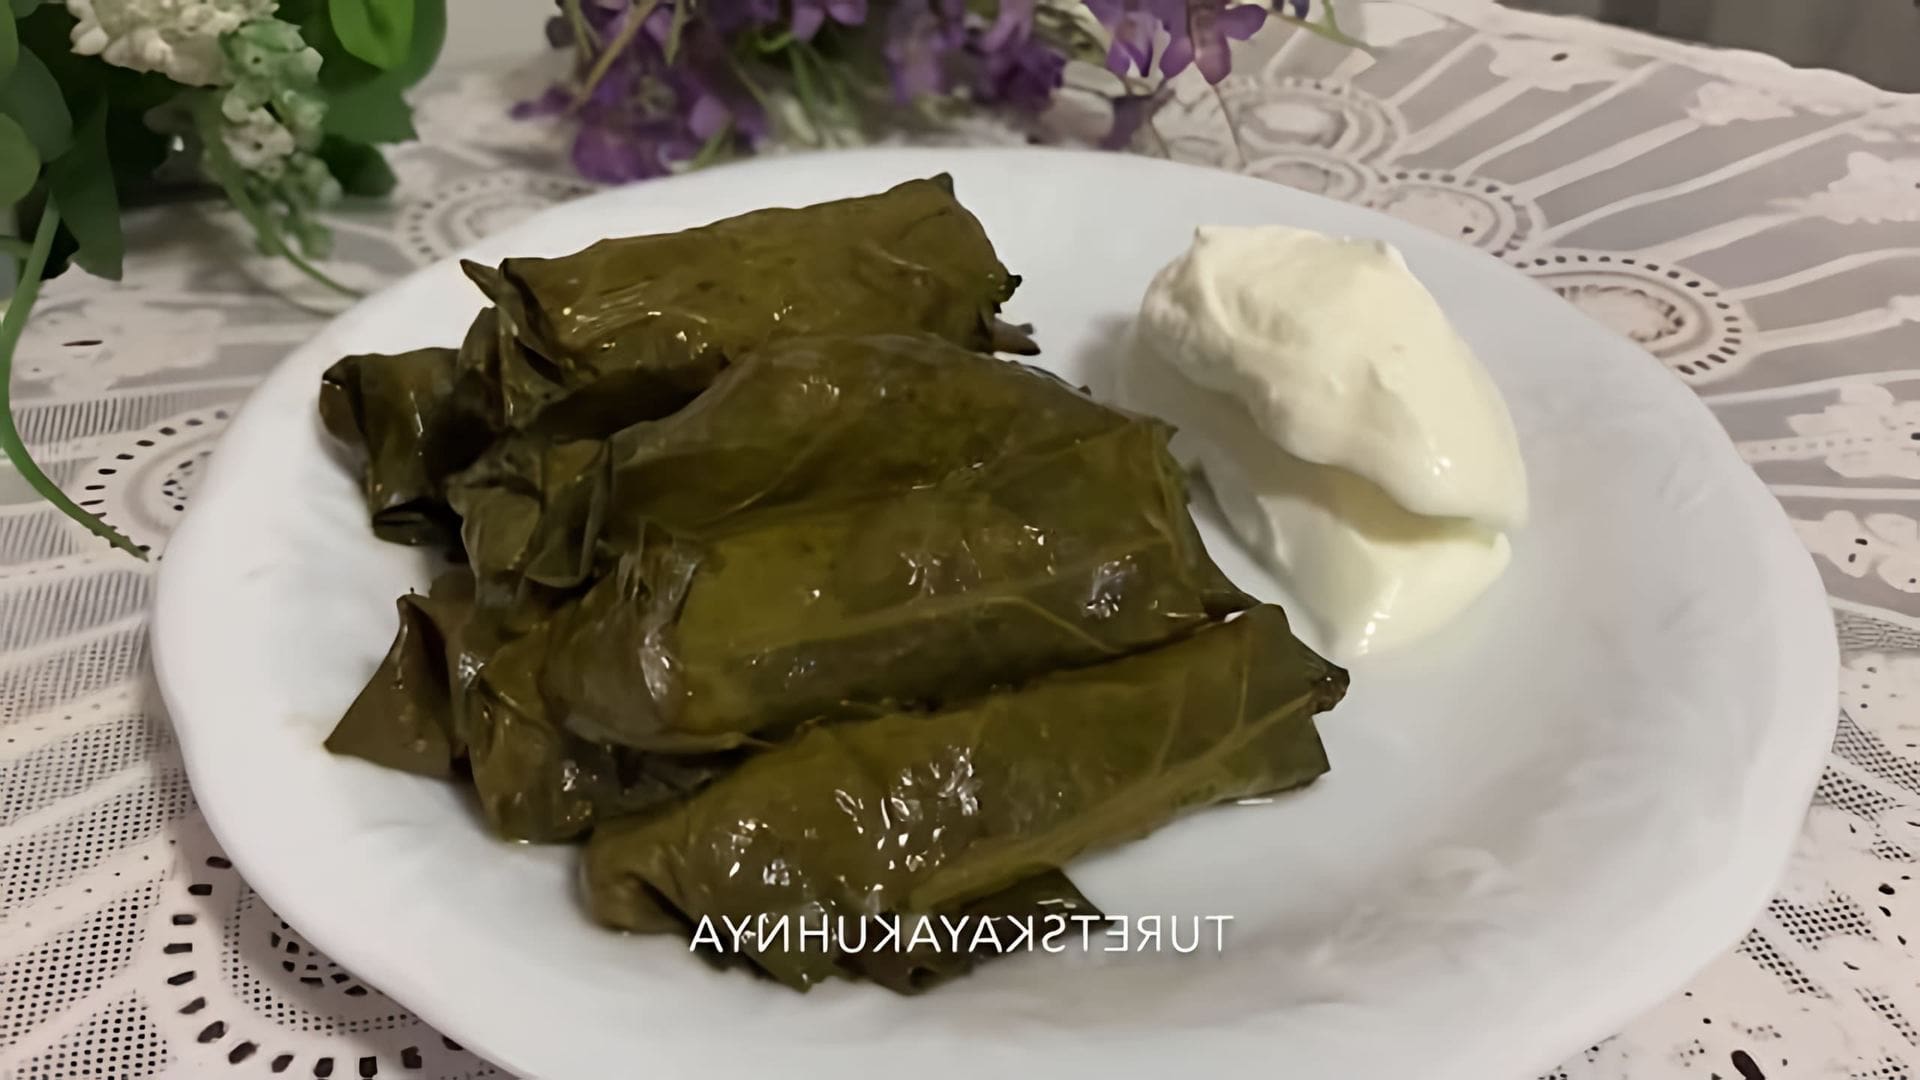 В этом видео демонстрируется рецепт приготовления долмы по-турецки без использования мяса